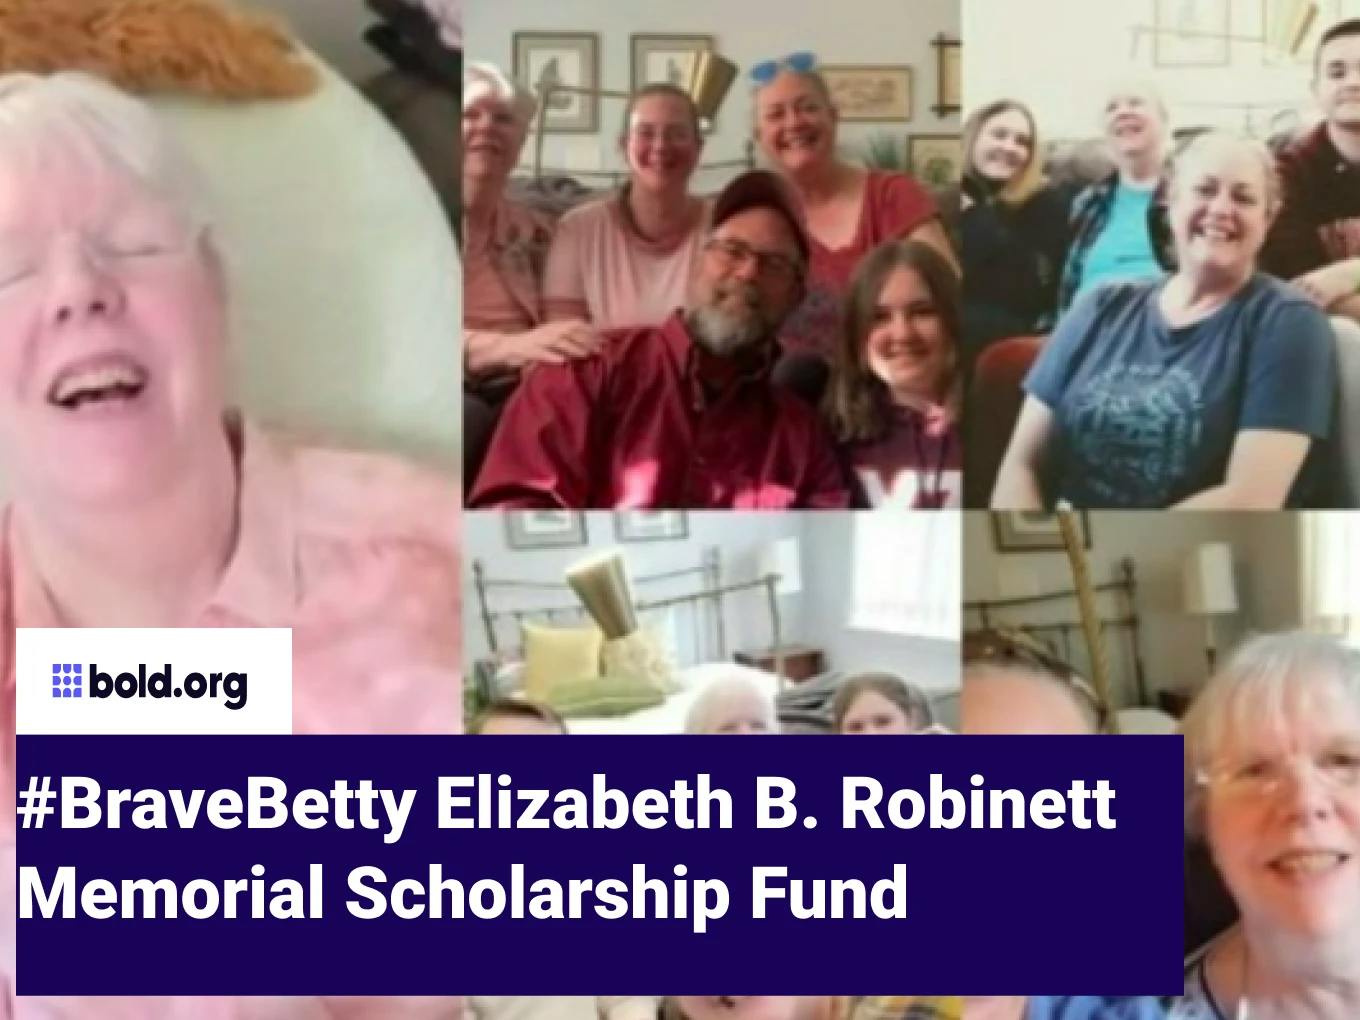 #Bravebetty Elizabeth B. Robinett Memorial Scholarship Fund